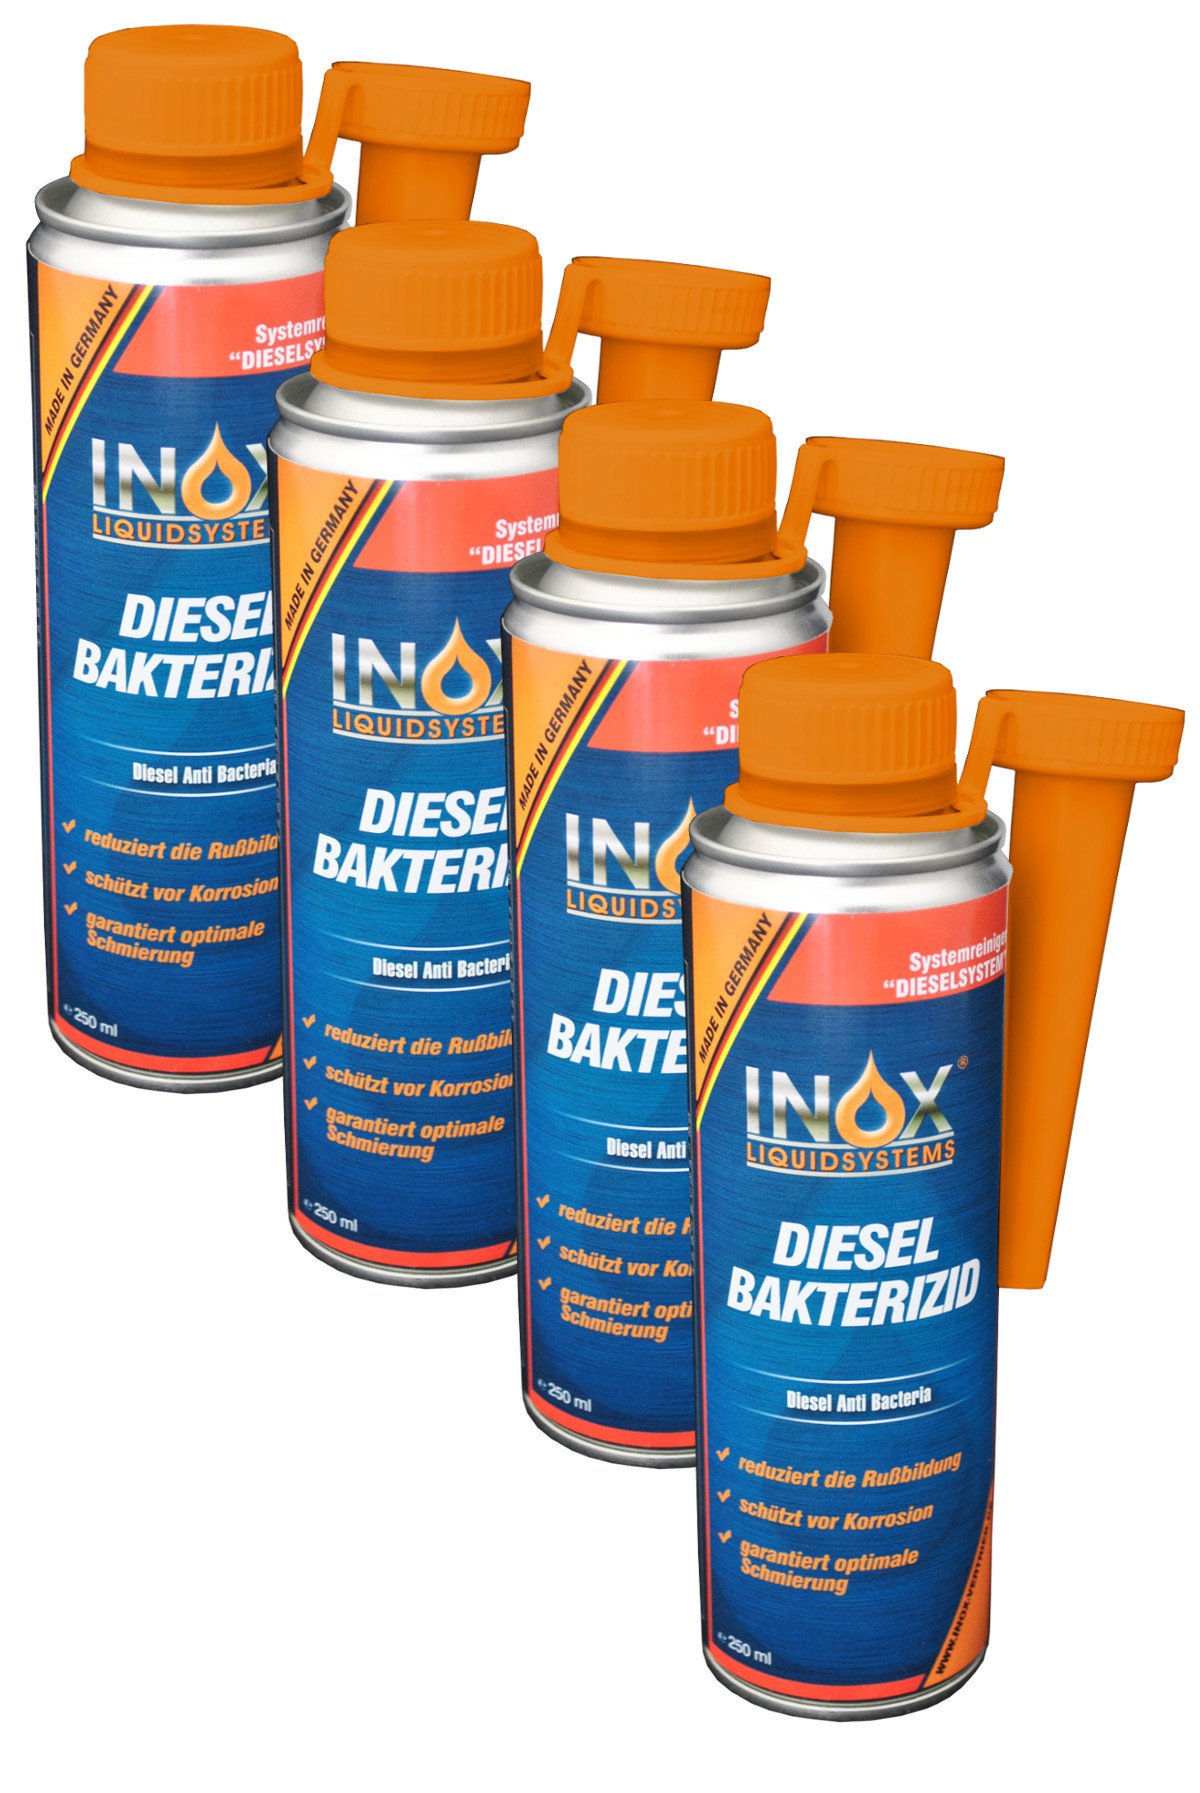 INOX® Diesel Bakterizid, 4 x 250ml - Additiv Desinfektion für Dieselsystem, Auto und Heizölsysteme von INOX-LIQUIDSYSTEMS